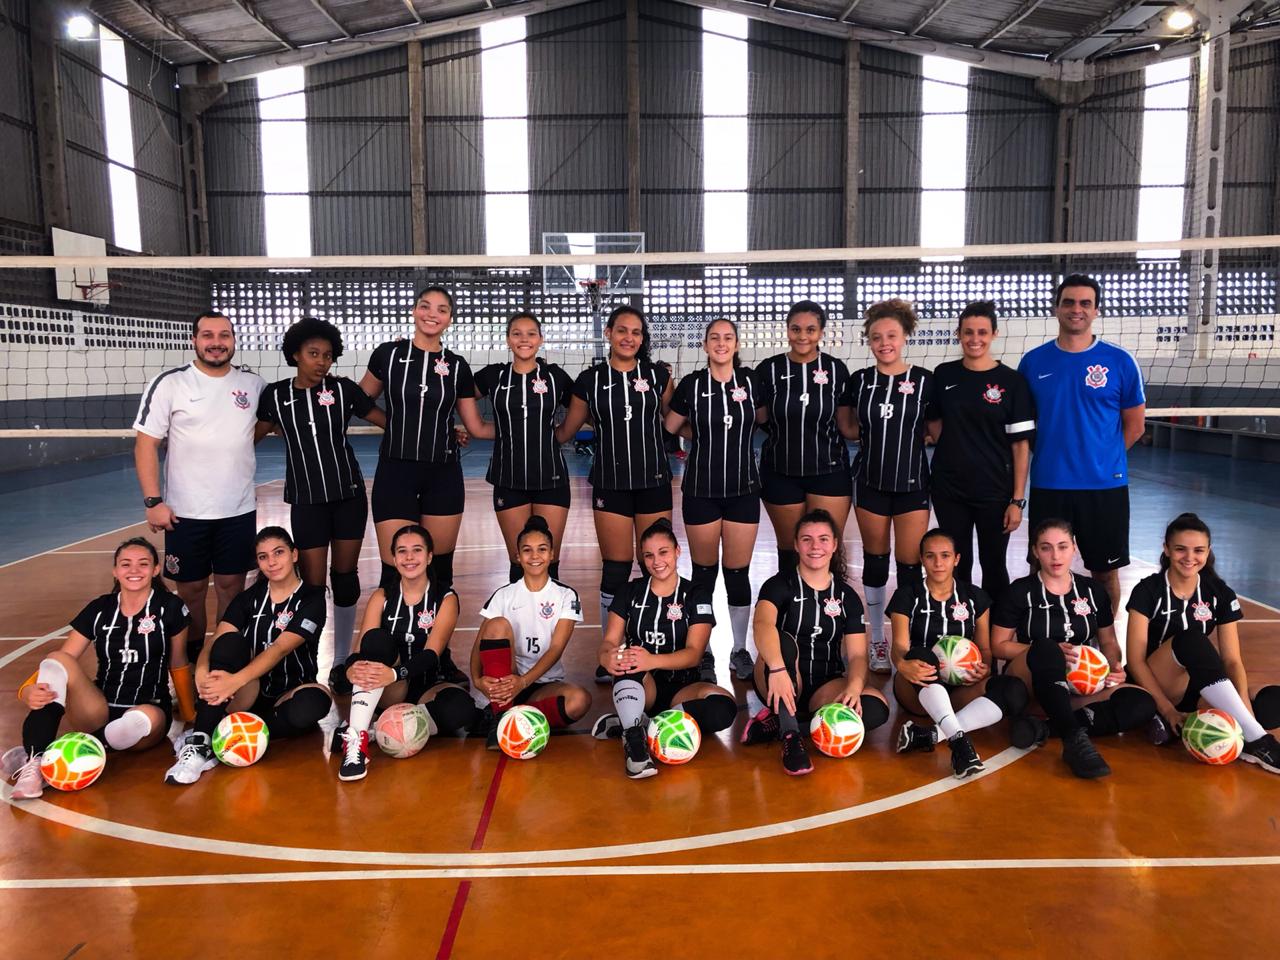 Sub-17 do Corinthians enfrenta o Bradesco pela 6ª rodada do Campeonato  Paulista de Vôlei Feminino